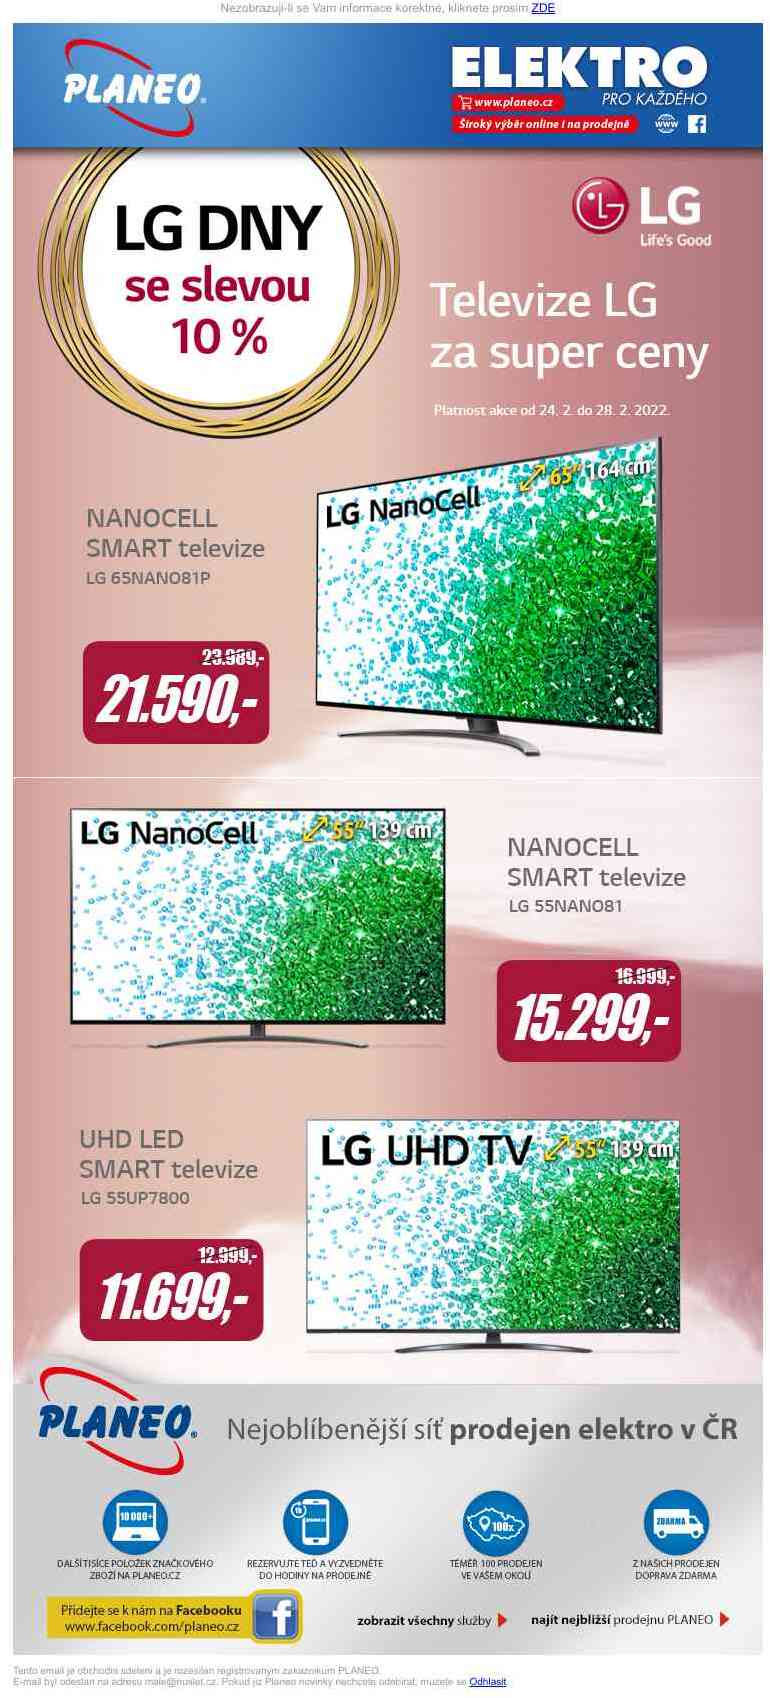 Mimořádná sleva 10% na vybrané TV LG